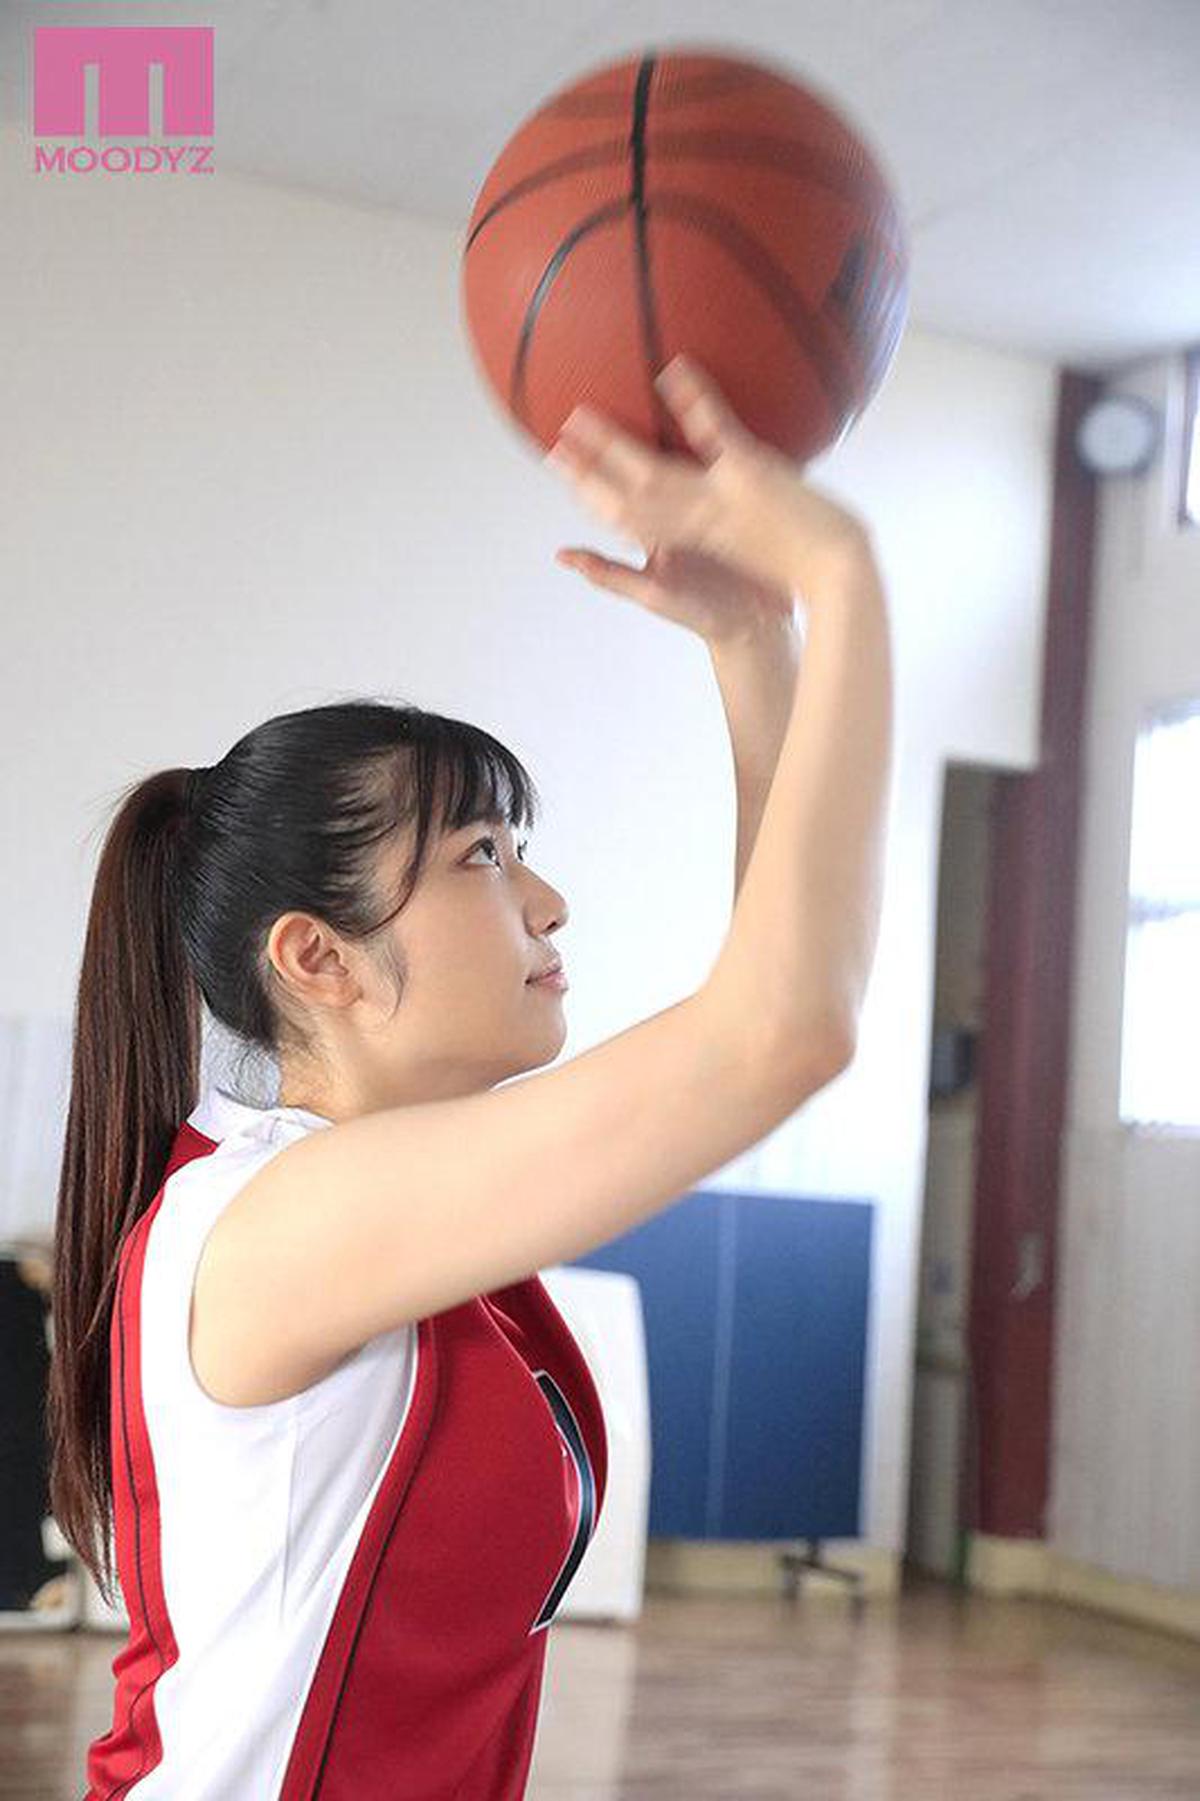 MIFD-194 Rookie Basketball Ancien joueur de sous-renforcement No.1 Three-Point Shooter Débuts audiovisuels à pleine puissance avec l'expérience de prendre le n ° 1 au concours général au Japon! !! Ruka Nanamura